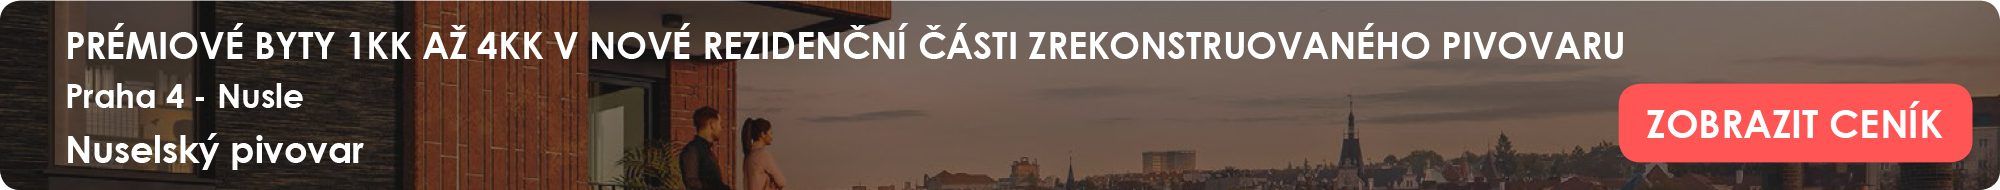 Rezidence Eliška - Developerský projekt k nastěhování %%ct_property_material%%.